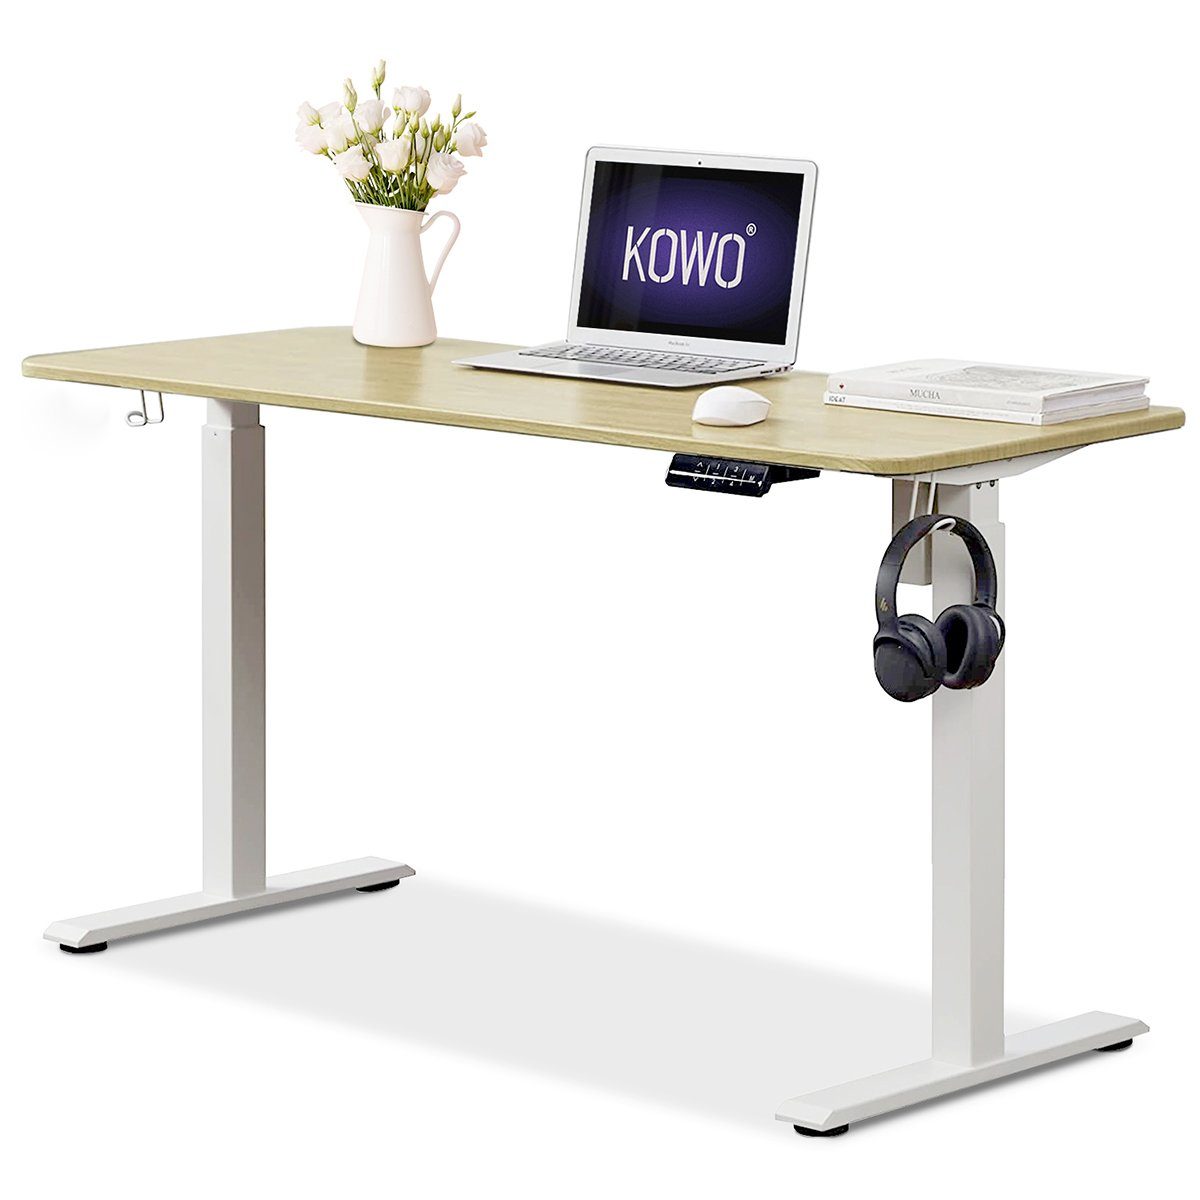 KOWO Schreibtisch Höhenverstellbarer Schreibtisch 160 cm Bürotisch mit Tischgestell, mit USB C Ladegerät und USB Netzteil für iPhone, iPad, MacBook, Handy Eiche